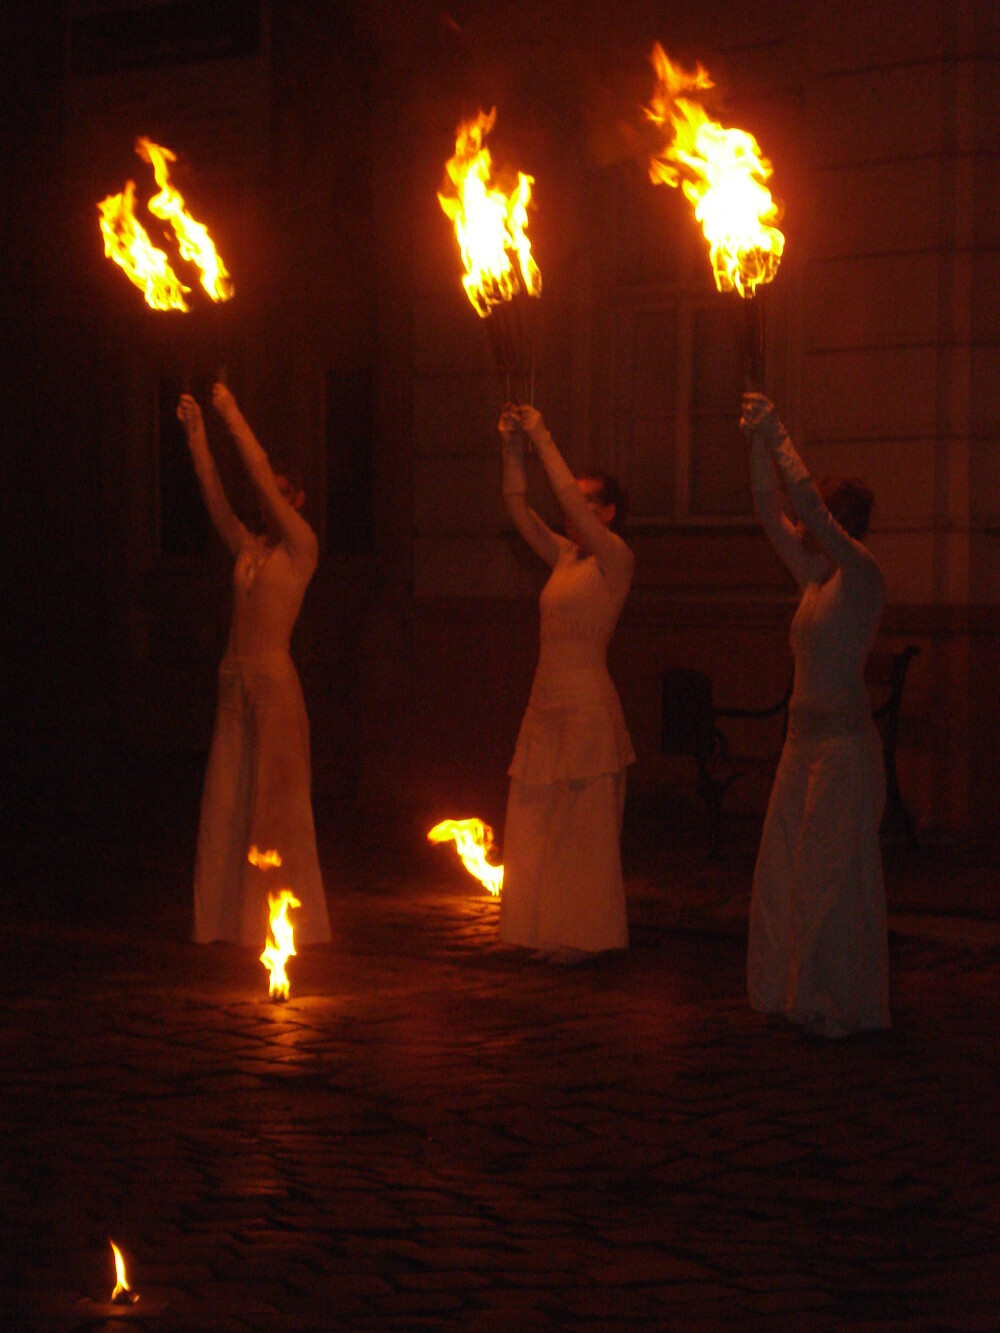 Spectacol cu foc si jocuri de lumini la incheierea Festivalului Baroc. GALERIE FOTO impresionanta - Imaginea 4